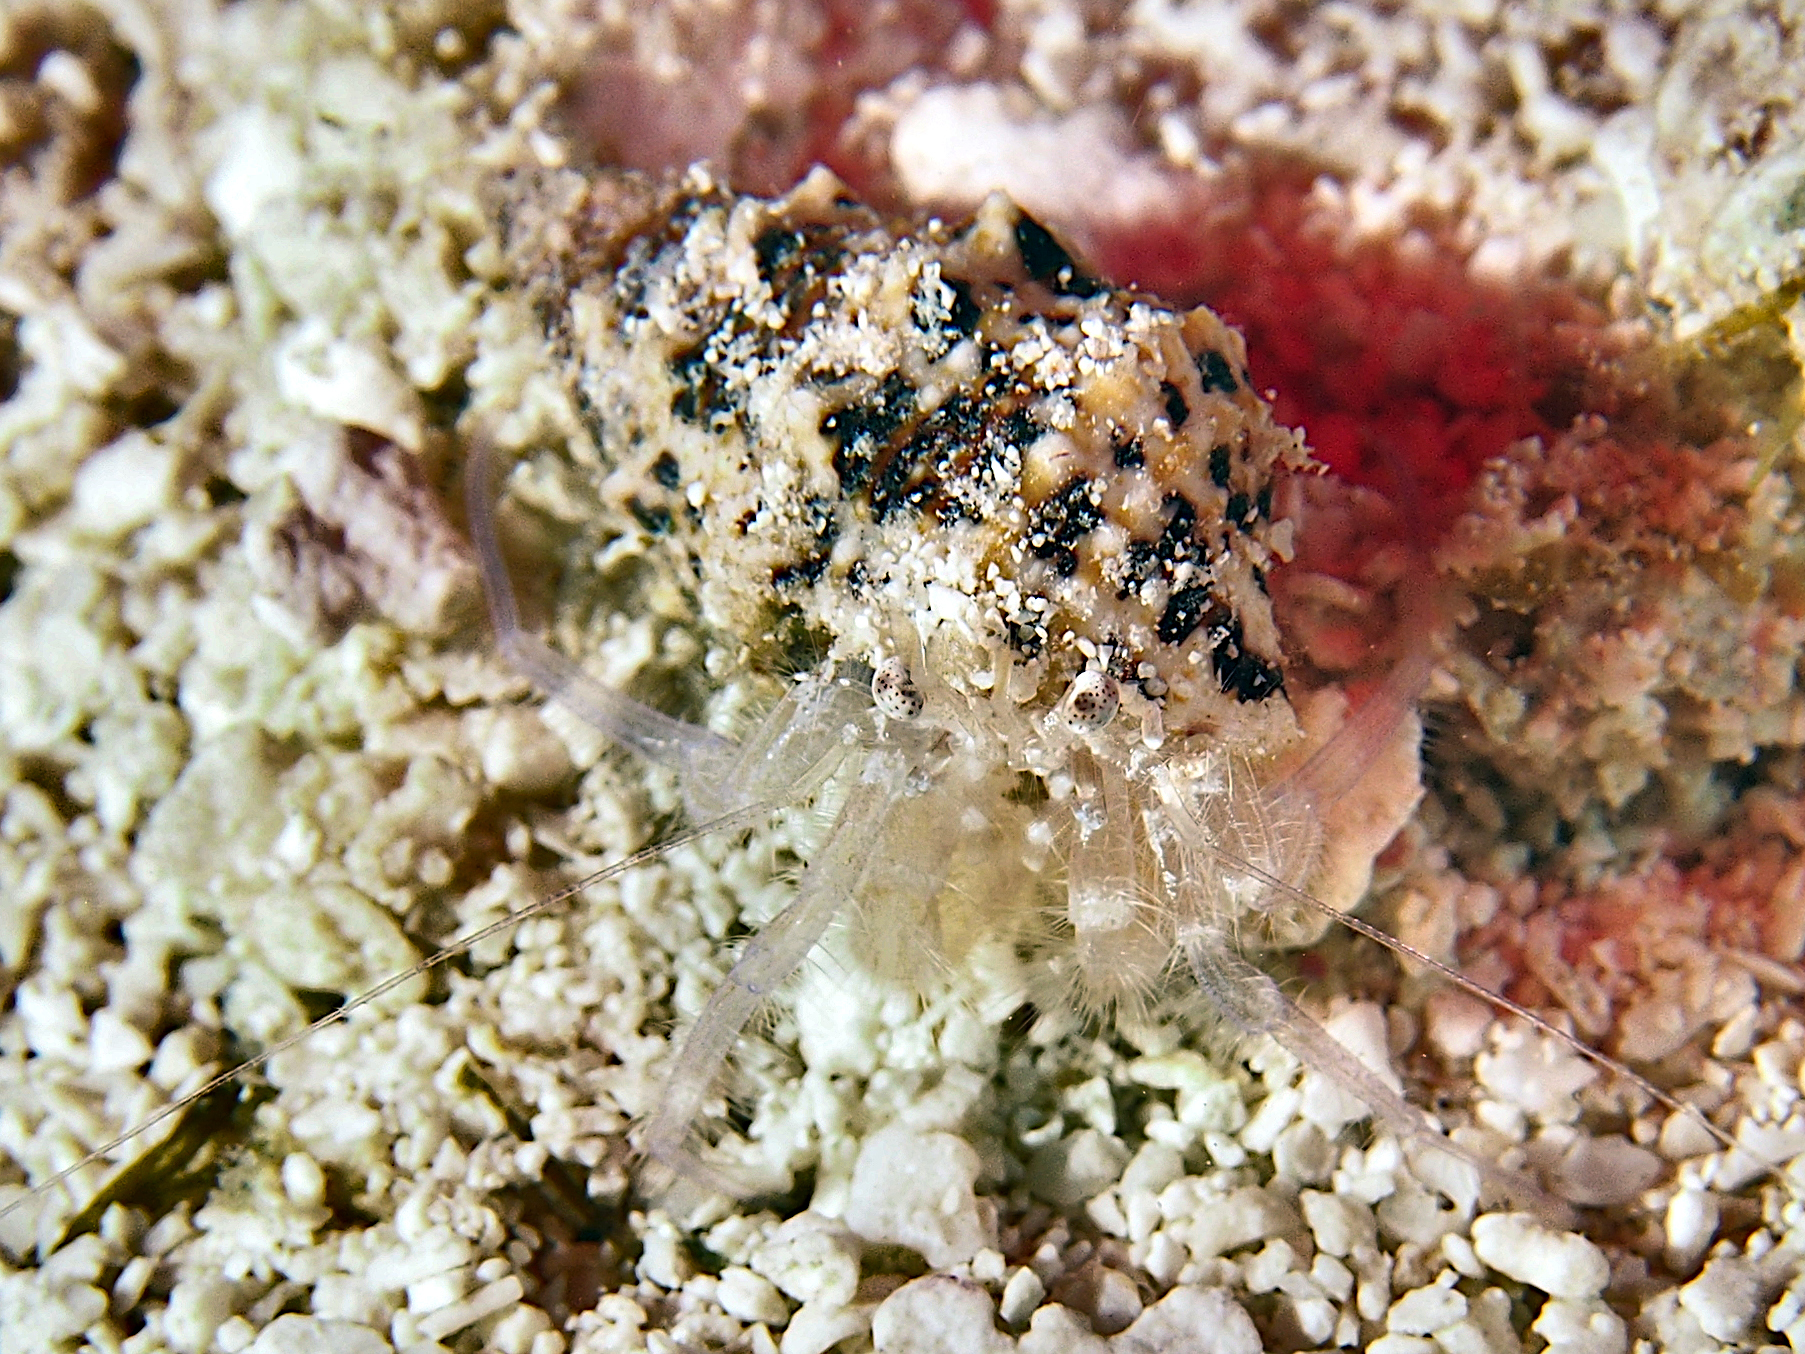 Spoteye Hermit Crab - Iridopagurus sp. 1